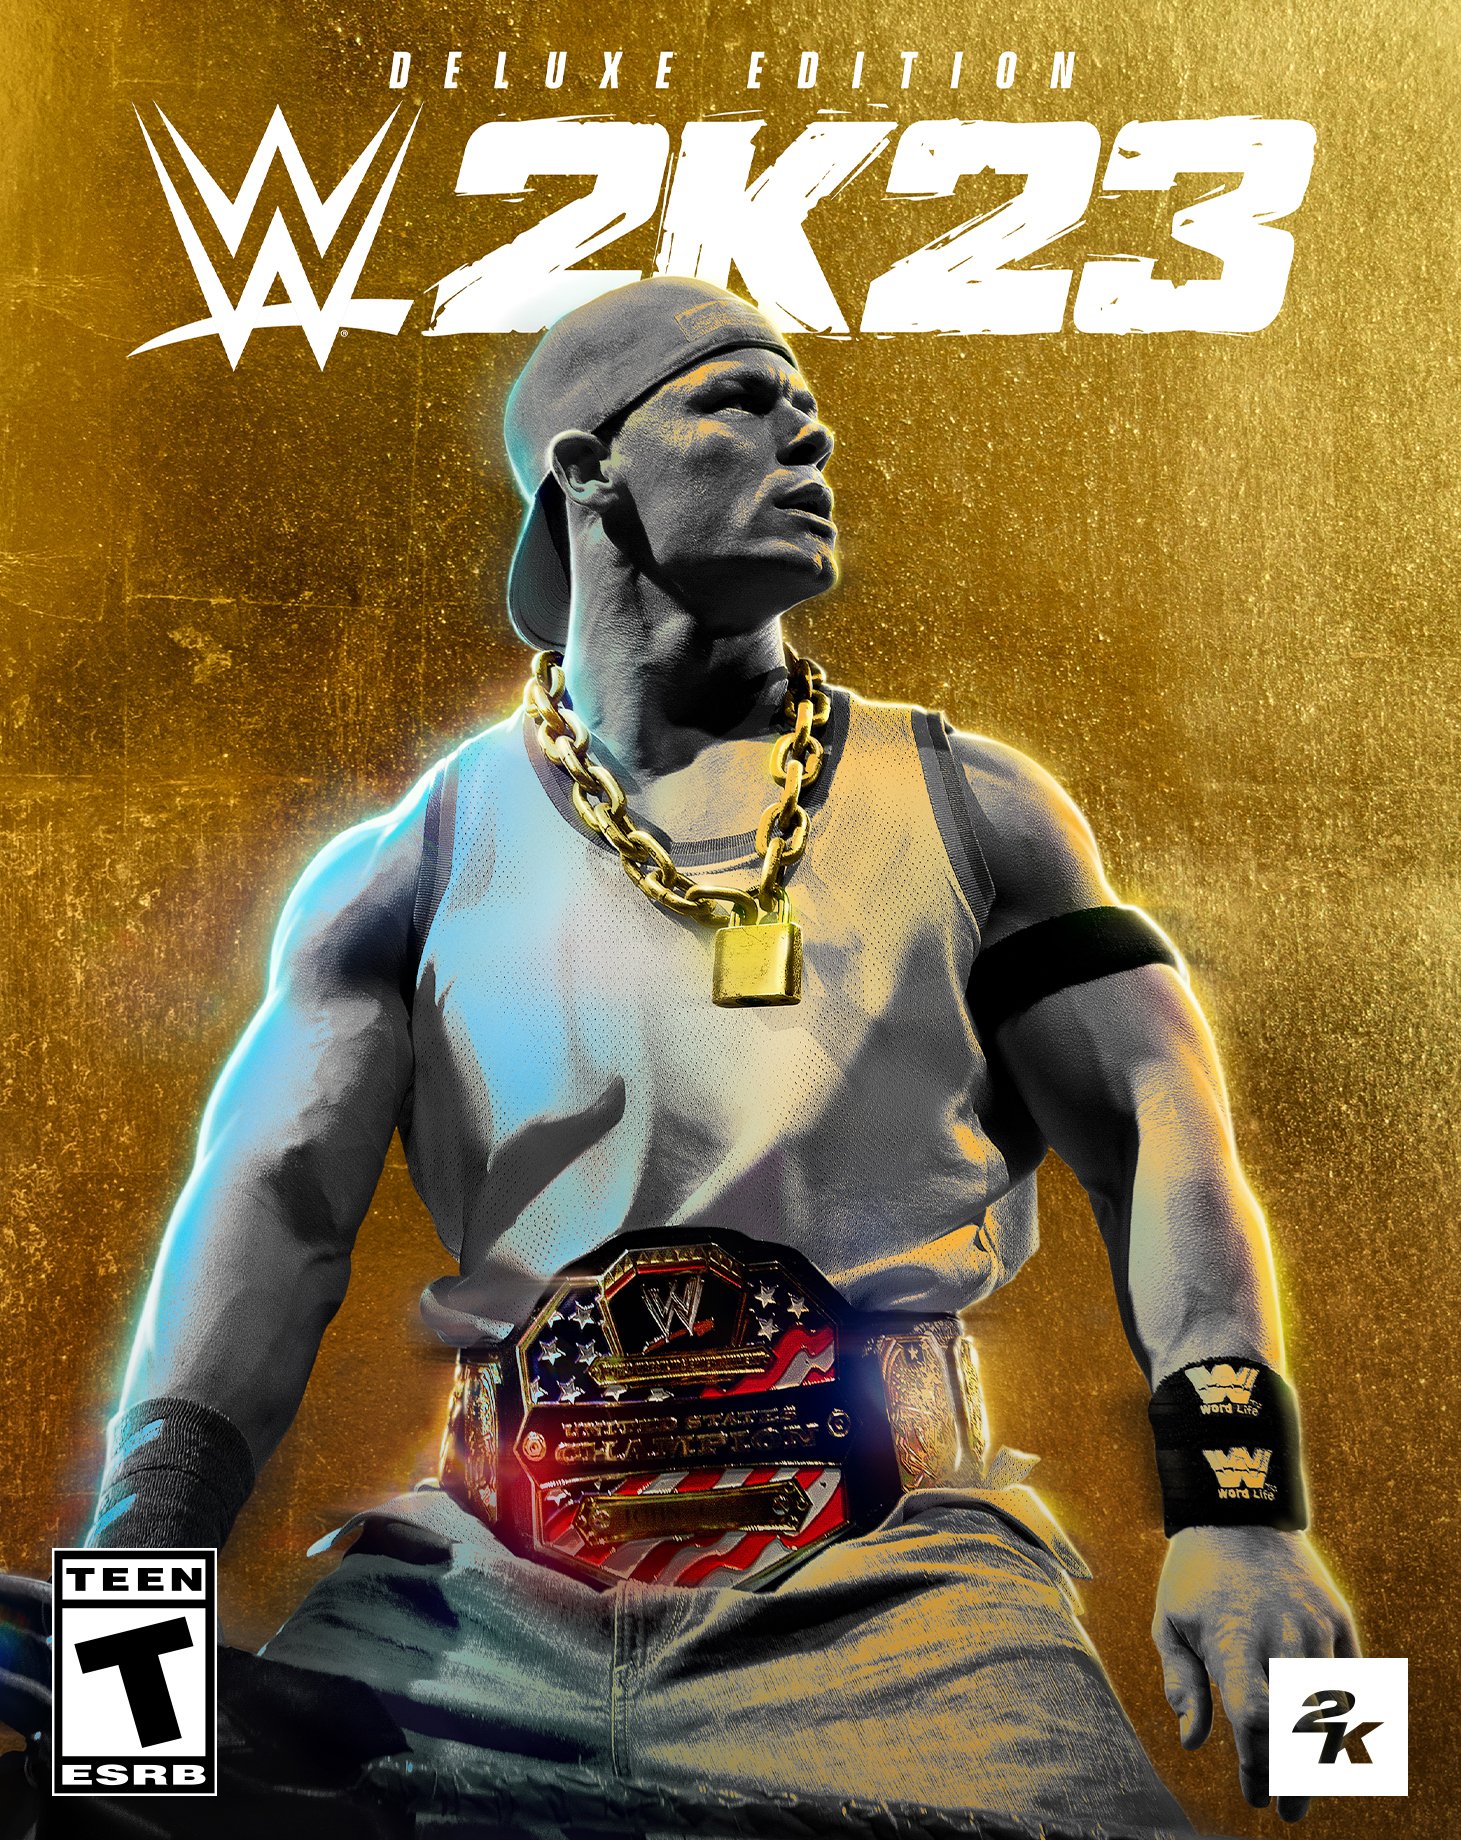 Portada de la versión deluxe de WWE 2K23.